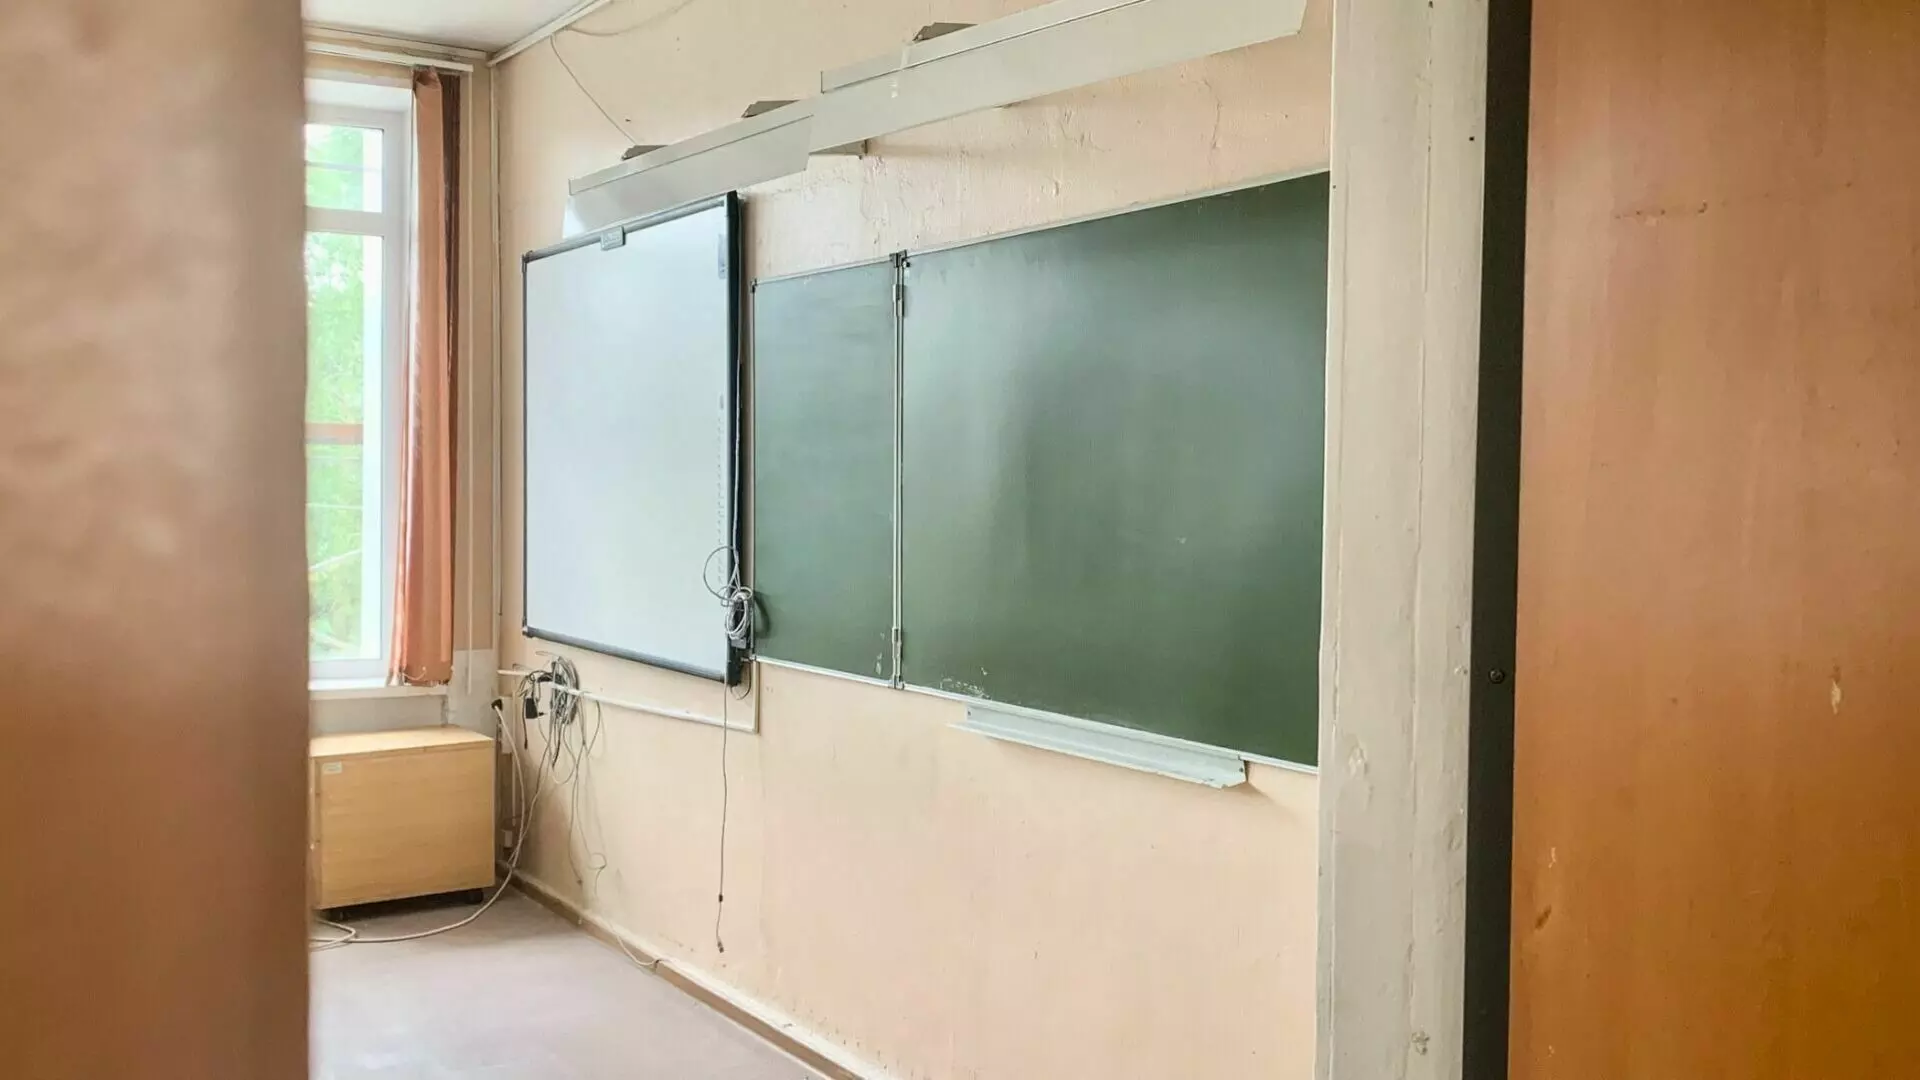 Директору школы в Волжском запретили работу руководителем на 2 года